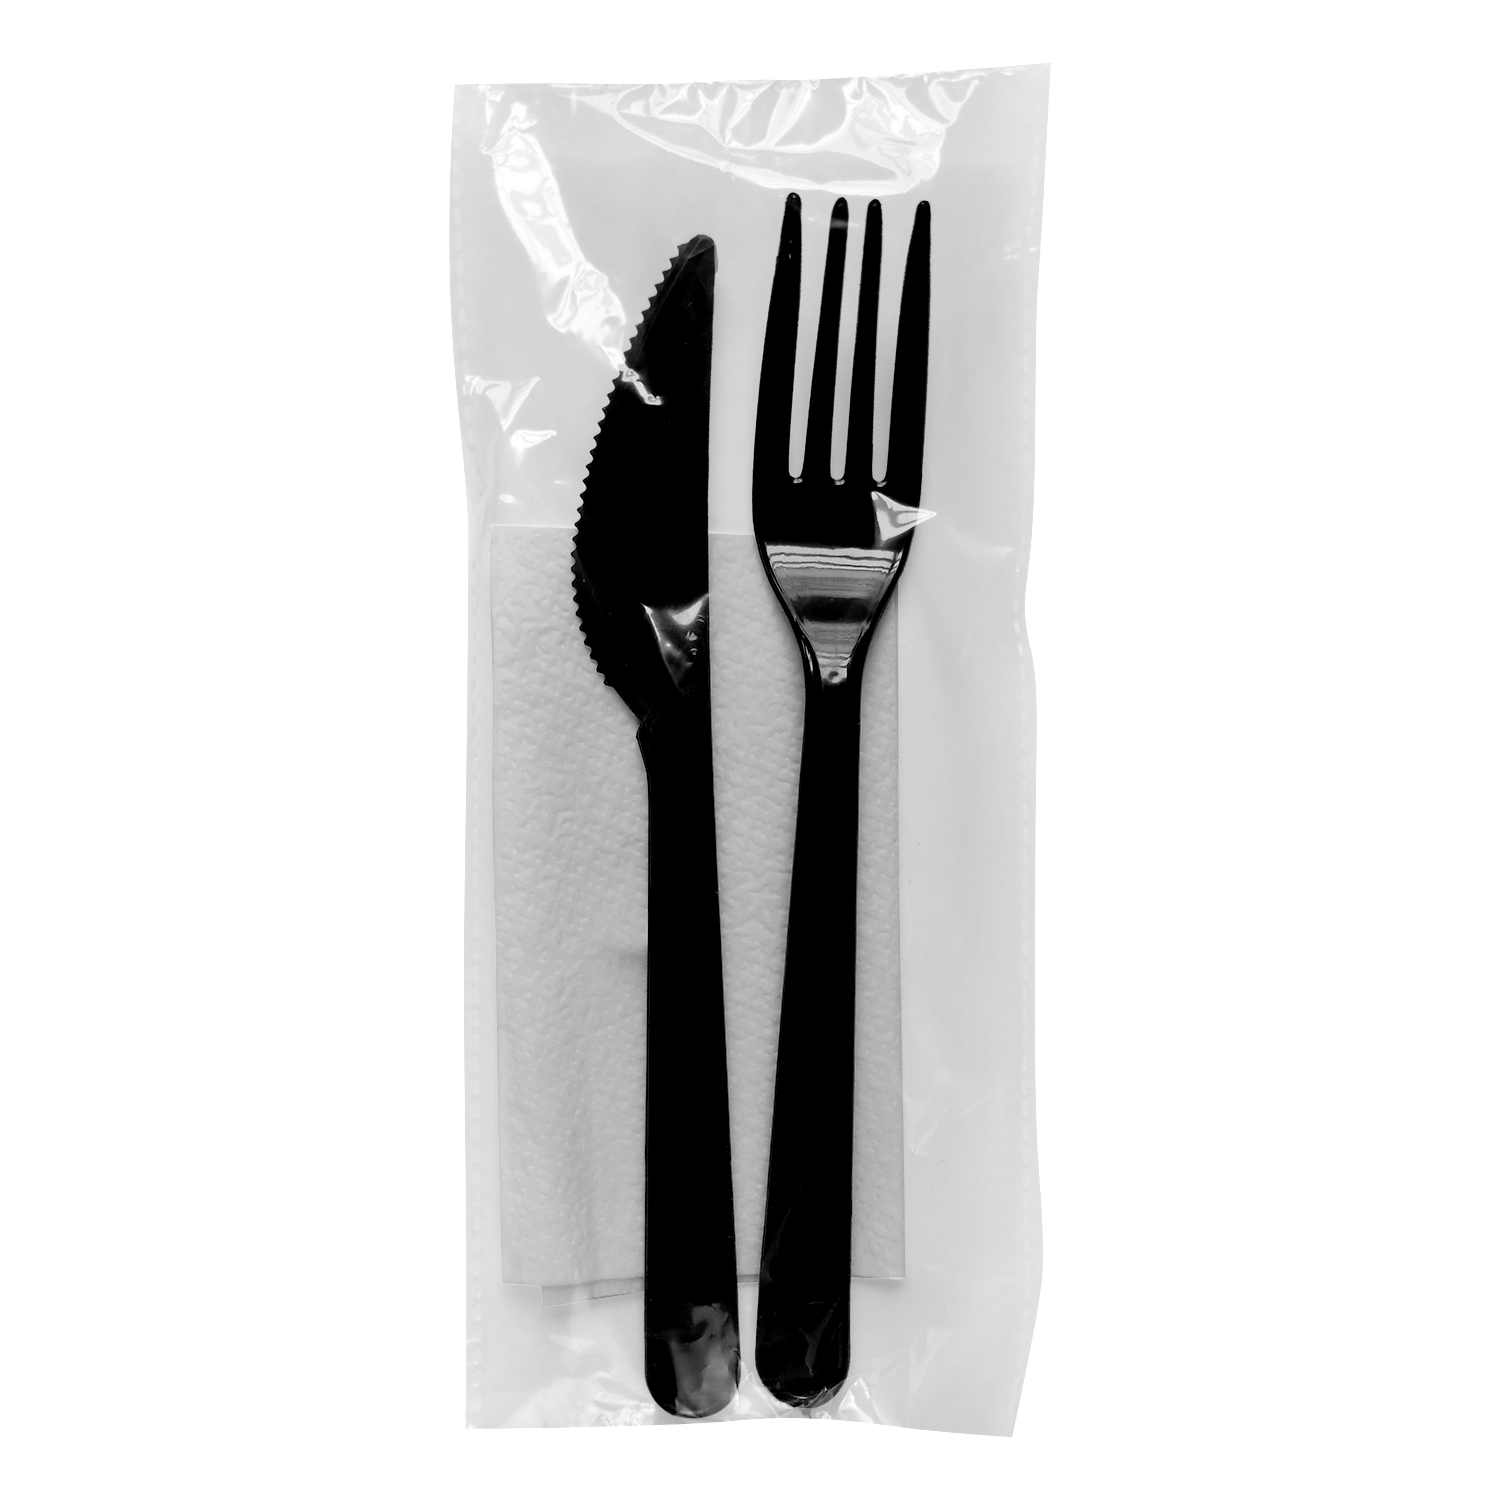 Ланч - набор -вилка черная,нож черный,салфетка белая